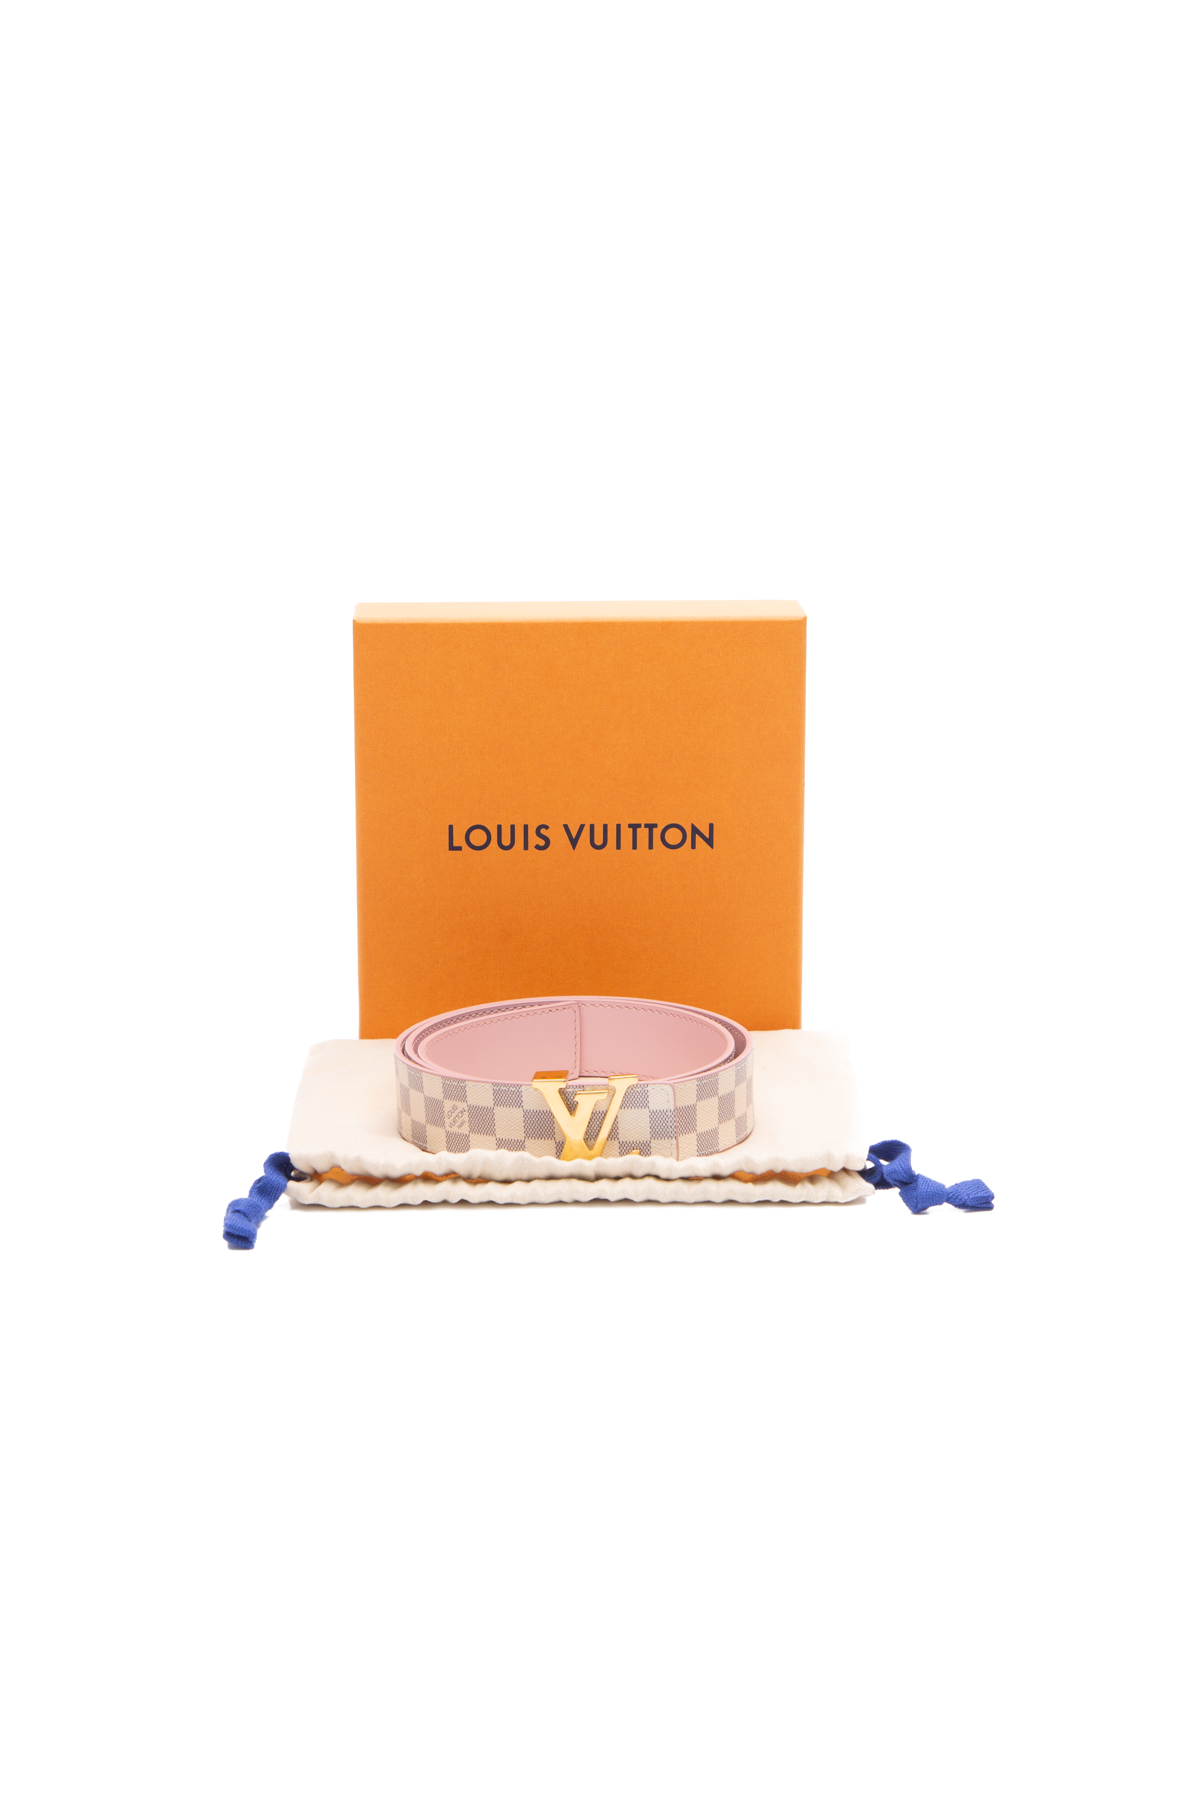 Louis Vuitton Men's Belt - Size 38 - Couture USA